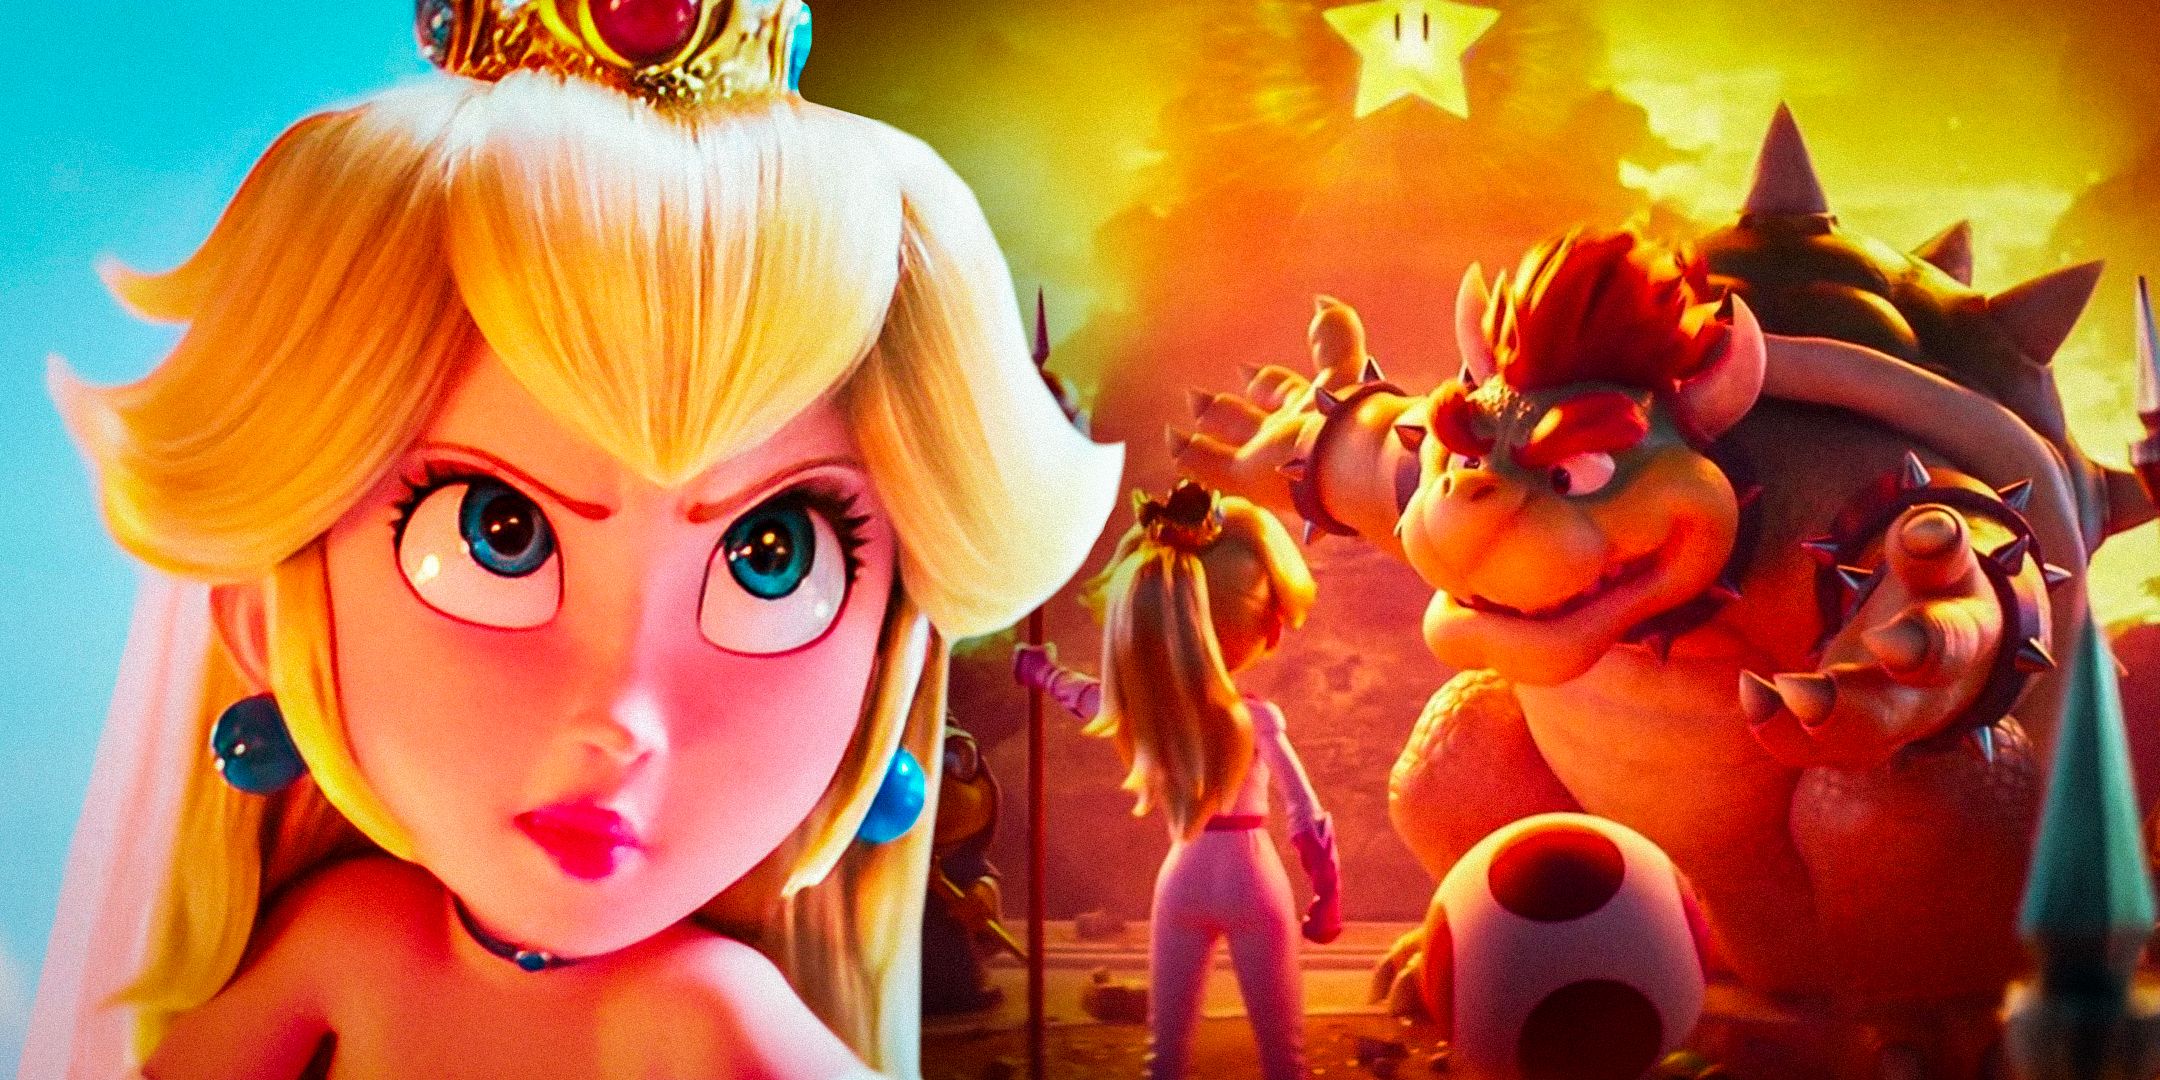 La franquicia Super Mario Bros. debería mantenerse alejada de una historia extraña de la princesa Peach